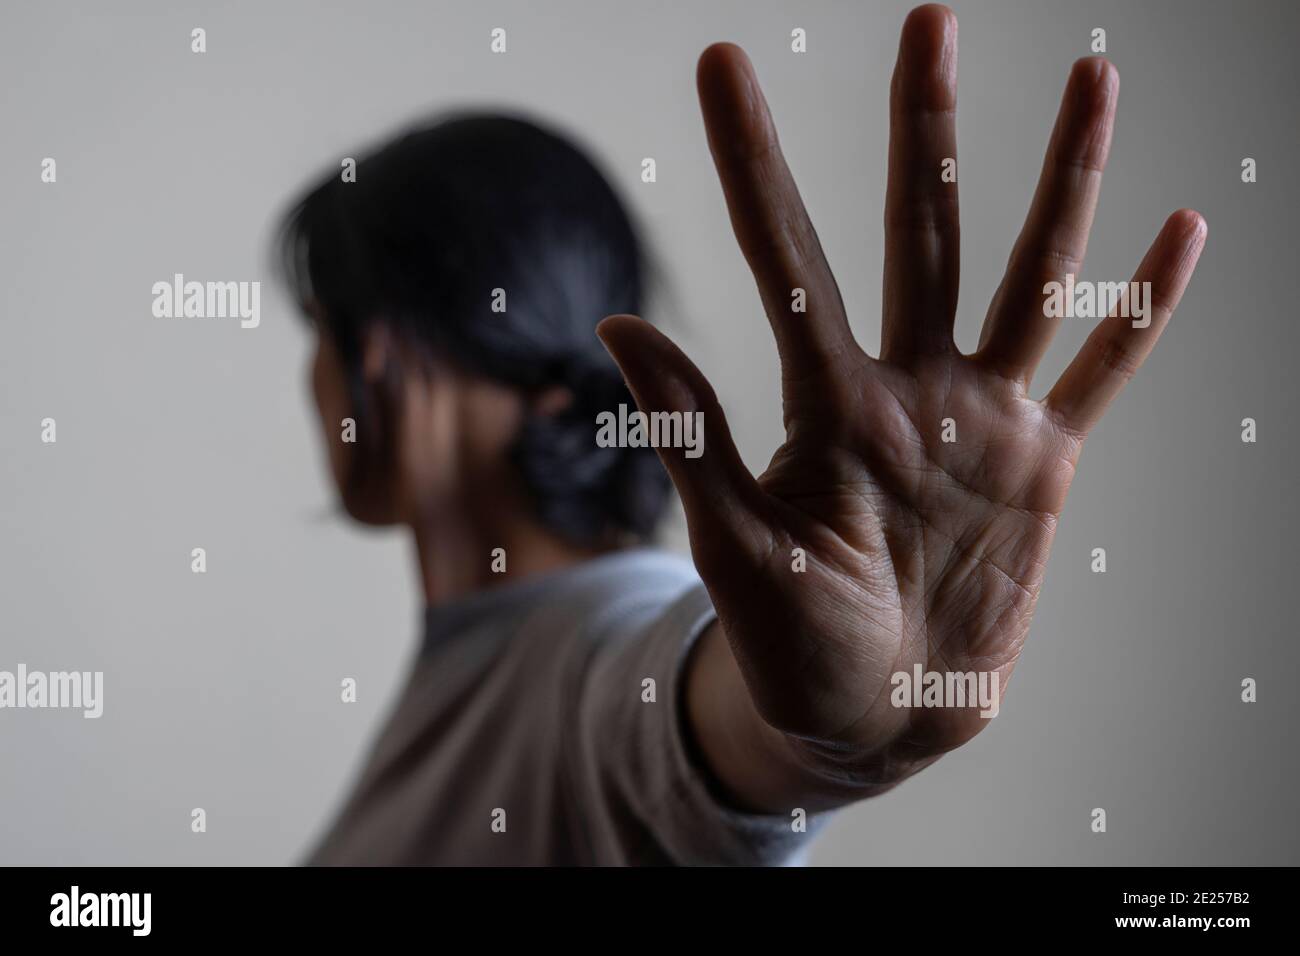 La donna alza la mano e mostra il gesto di arresto a mano cercando di fermare qualsiasi pericolo in arrivo. Segno di linguaggio non verbale Foto Stock